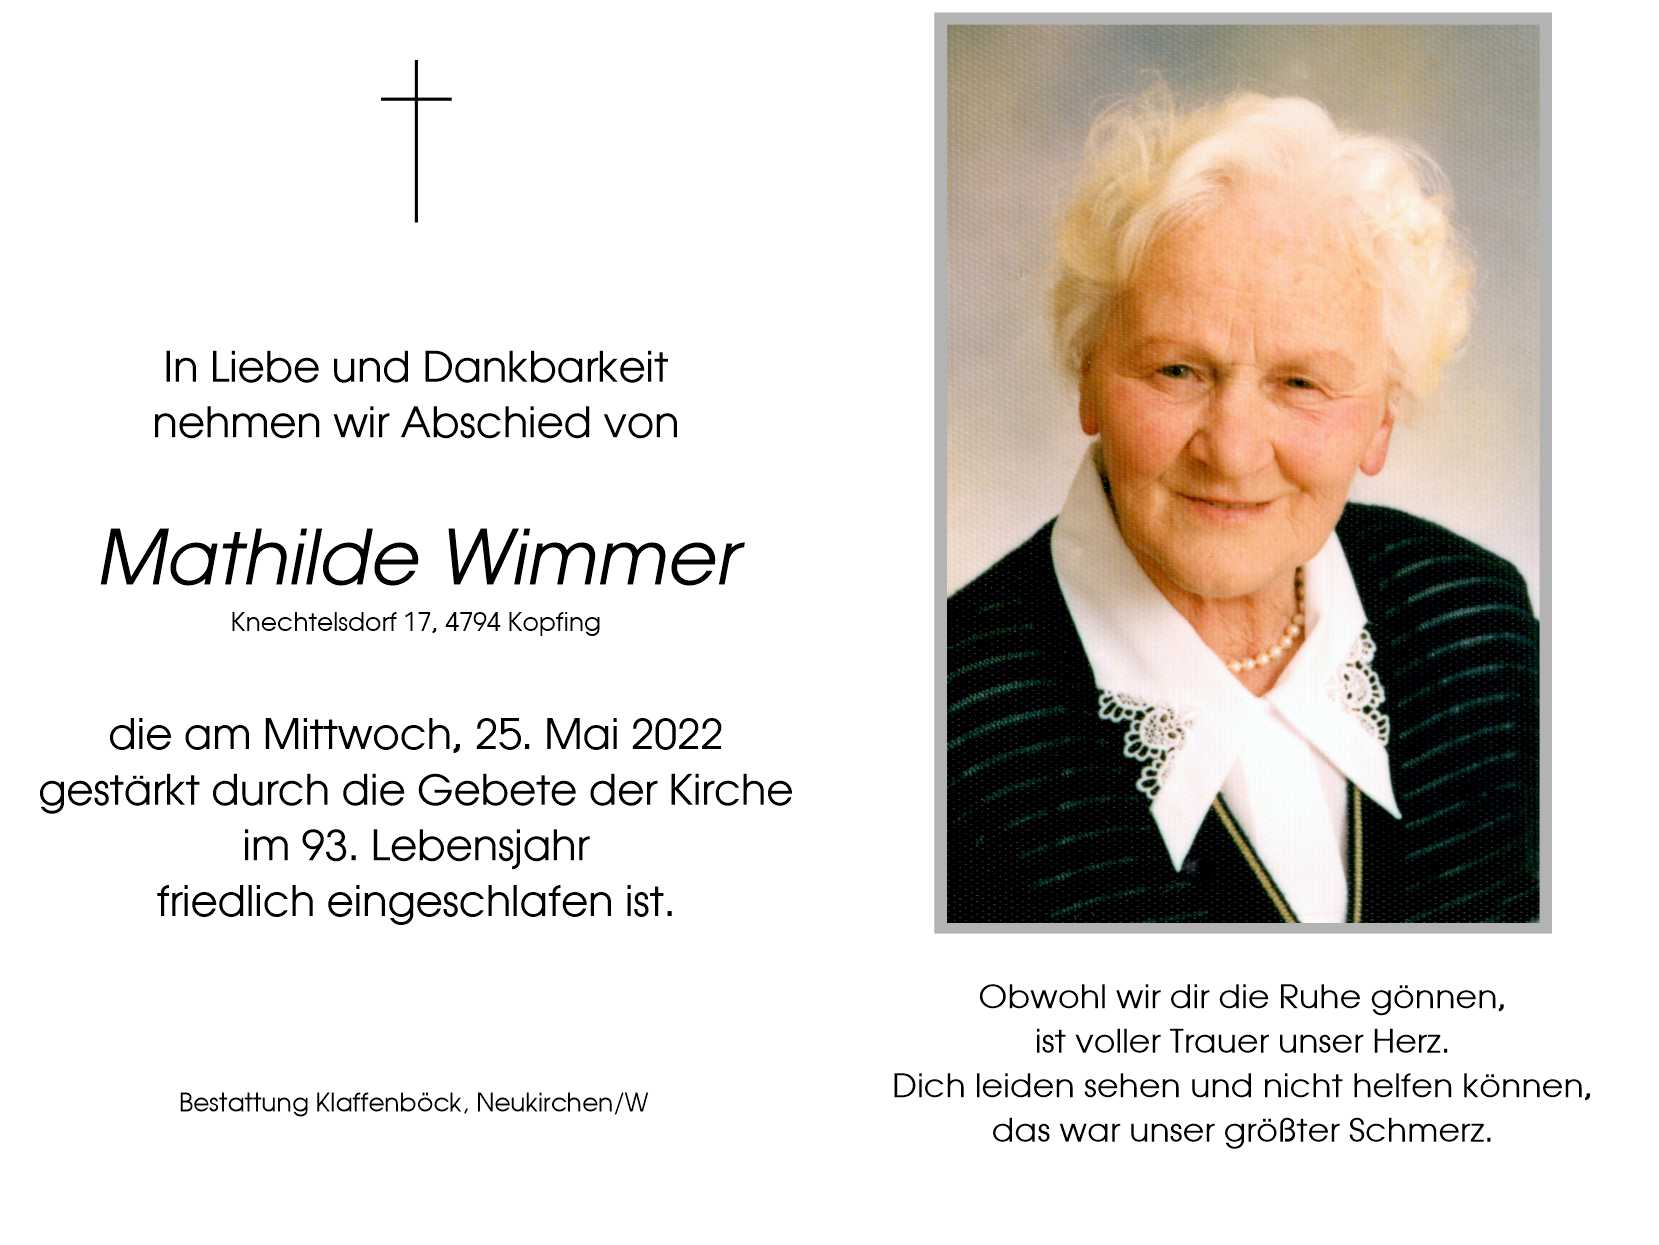 Mathilde  Wimmer